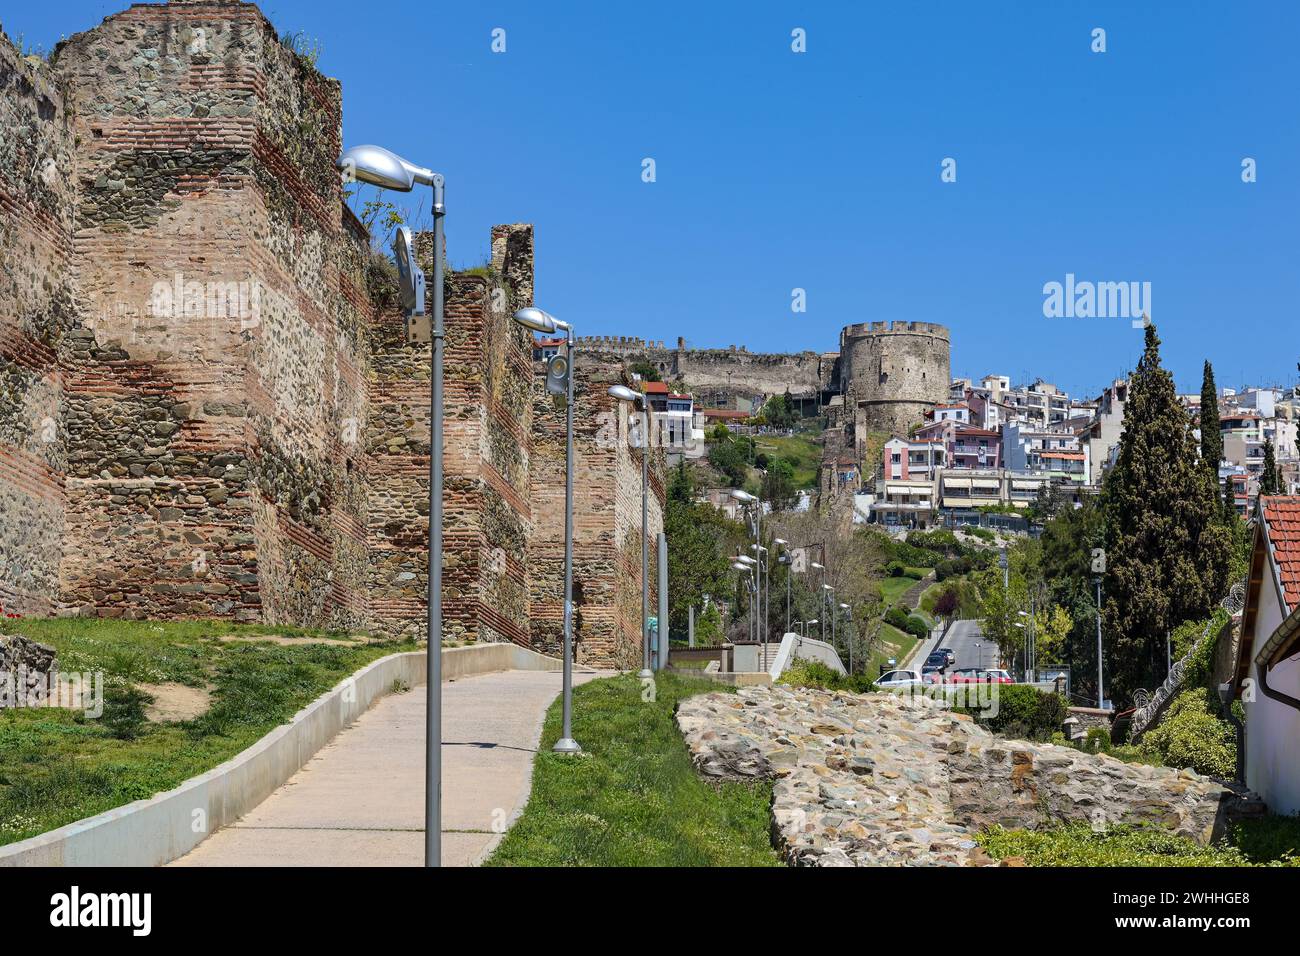 Fußweg entlang der byzantinischen Stadtmauer bis zur historischen Festung Thessaloniki in Mazedonien, Griechenland, Wahrzeichen und berühmtes t Stockfoto